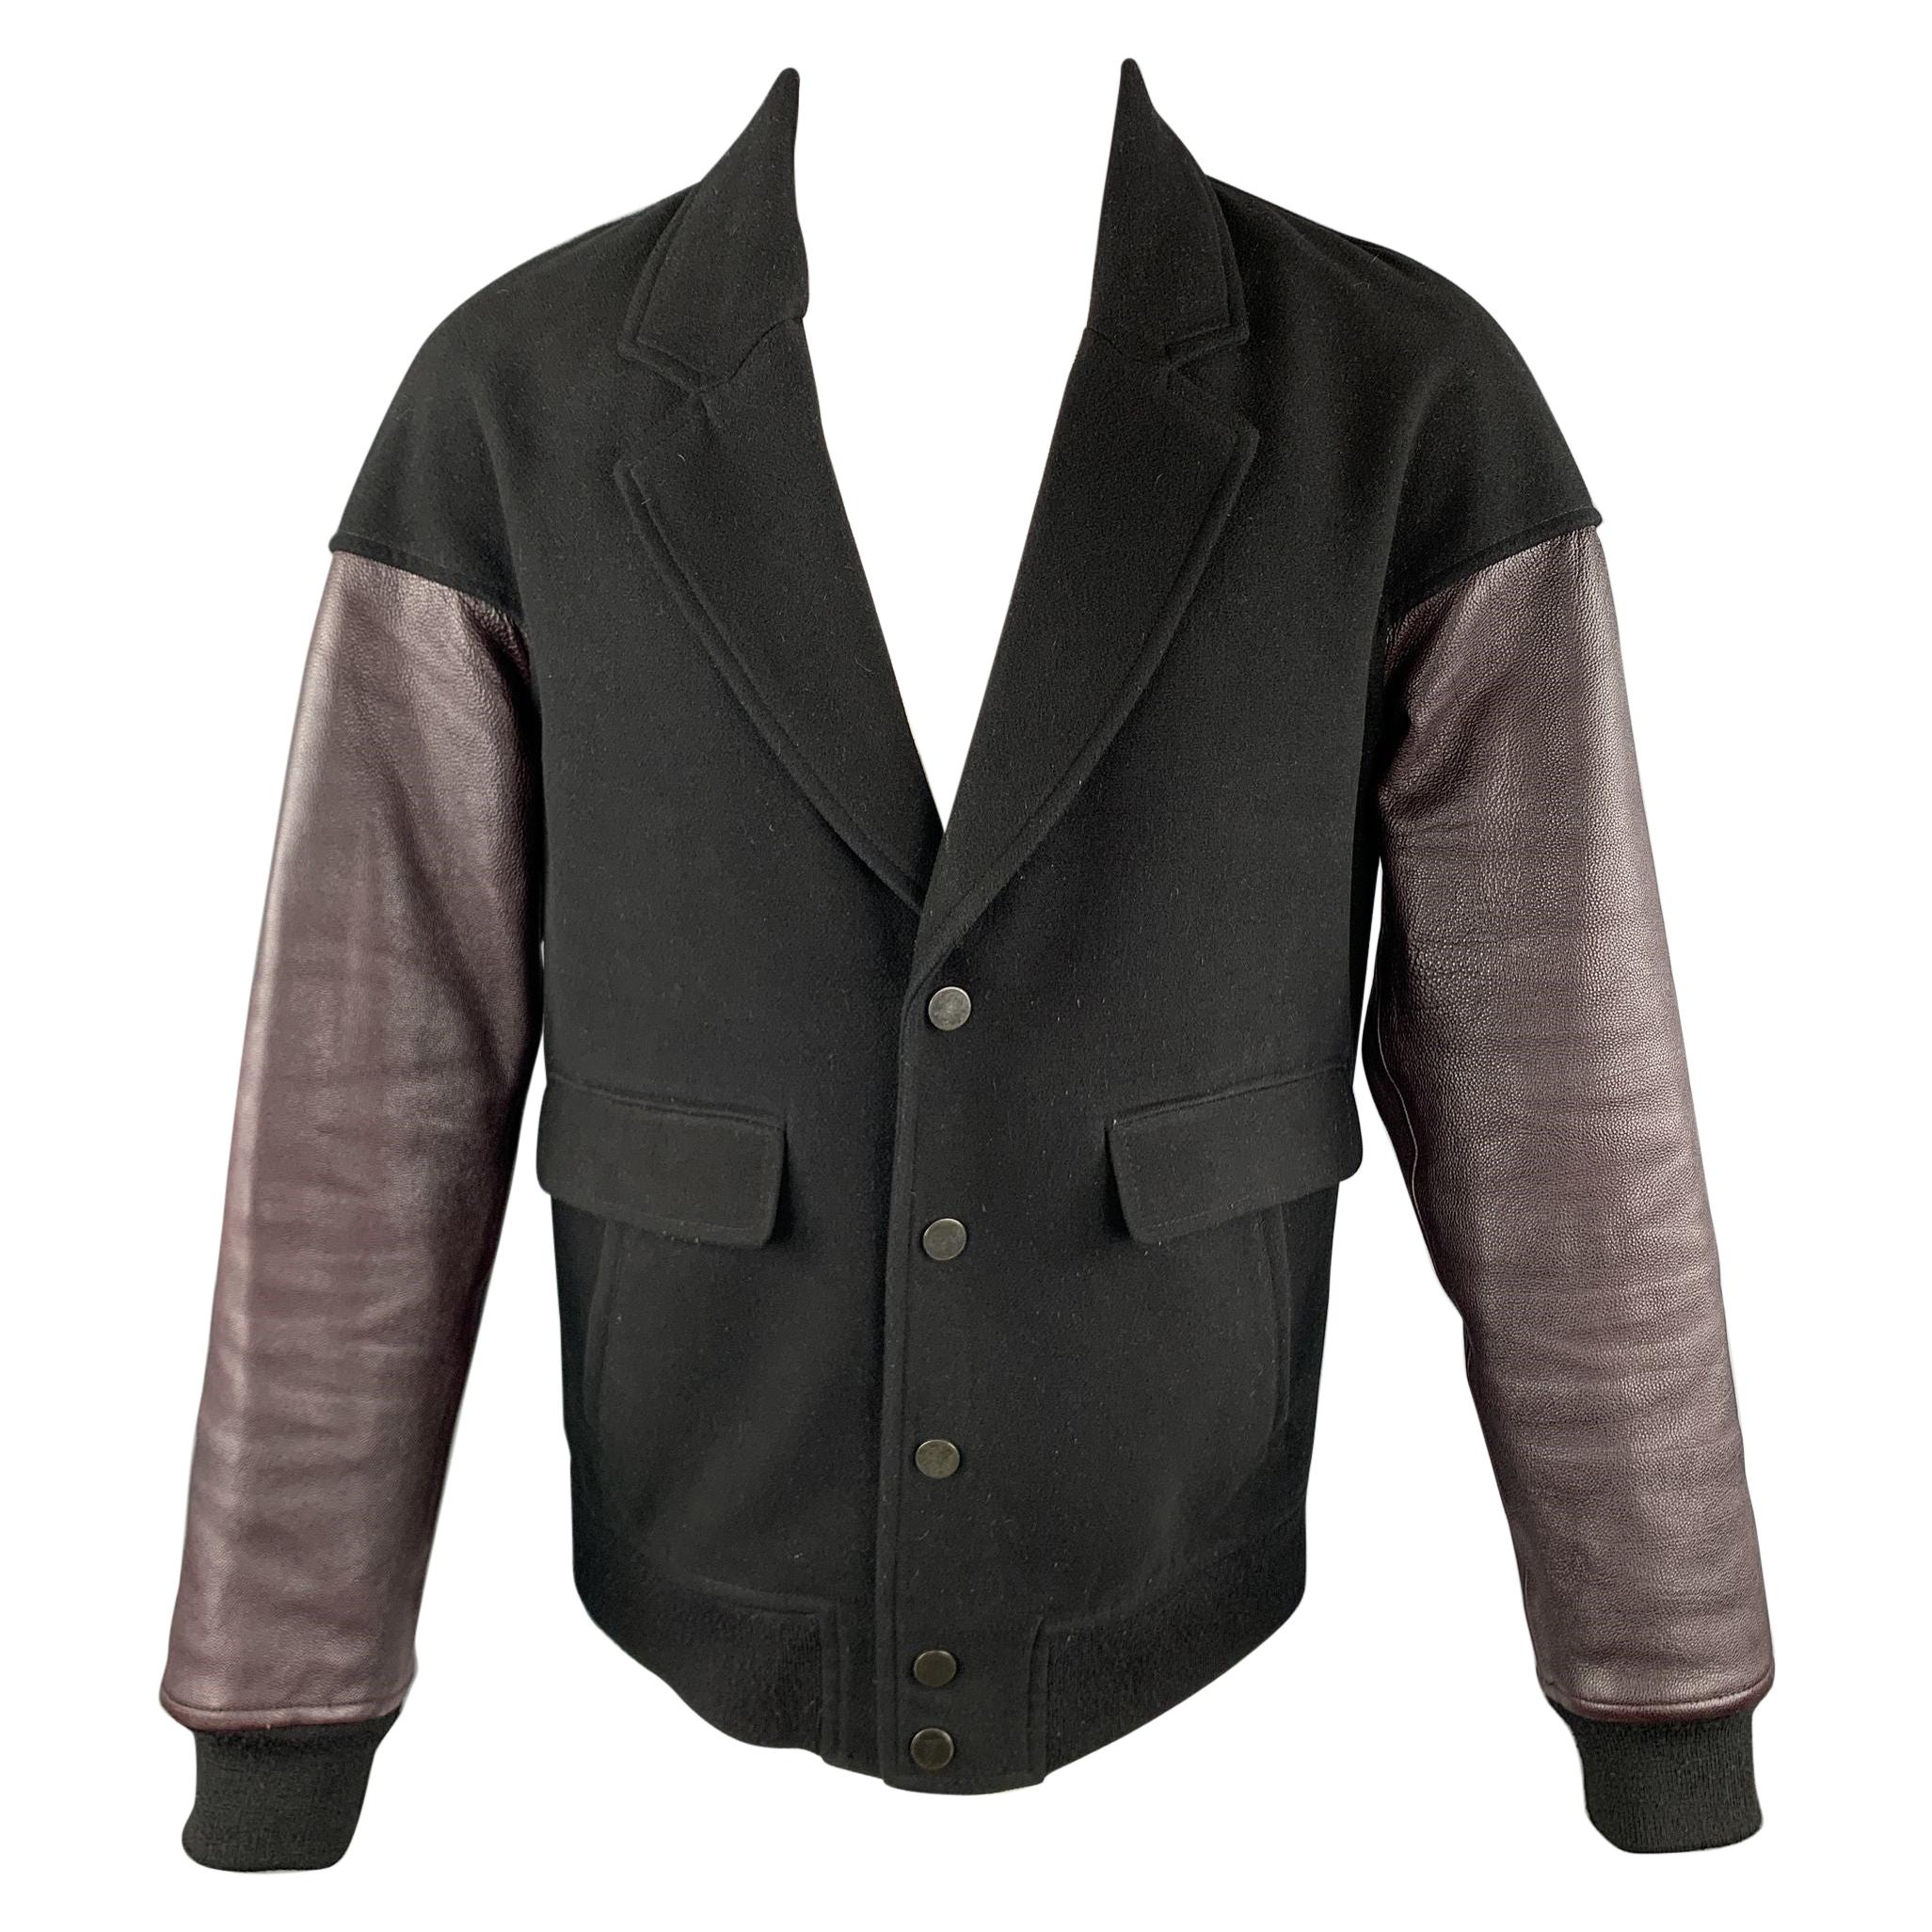 ALEXANDER WANG Size M Black & Burgundy Wool Leather Sleeves Jacket